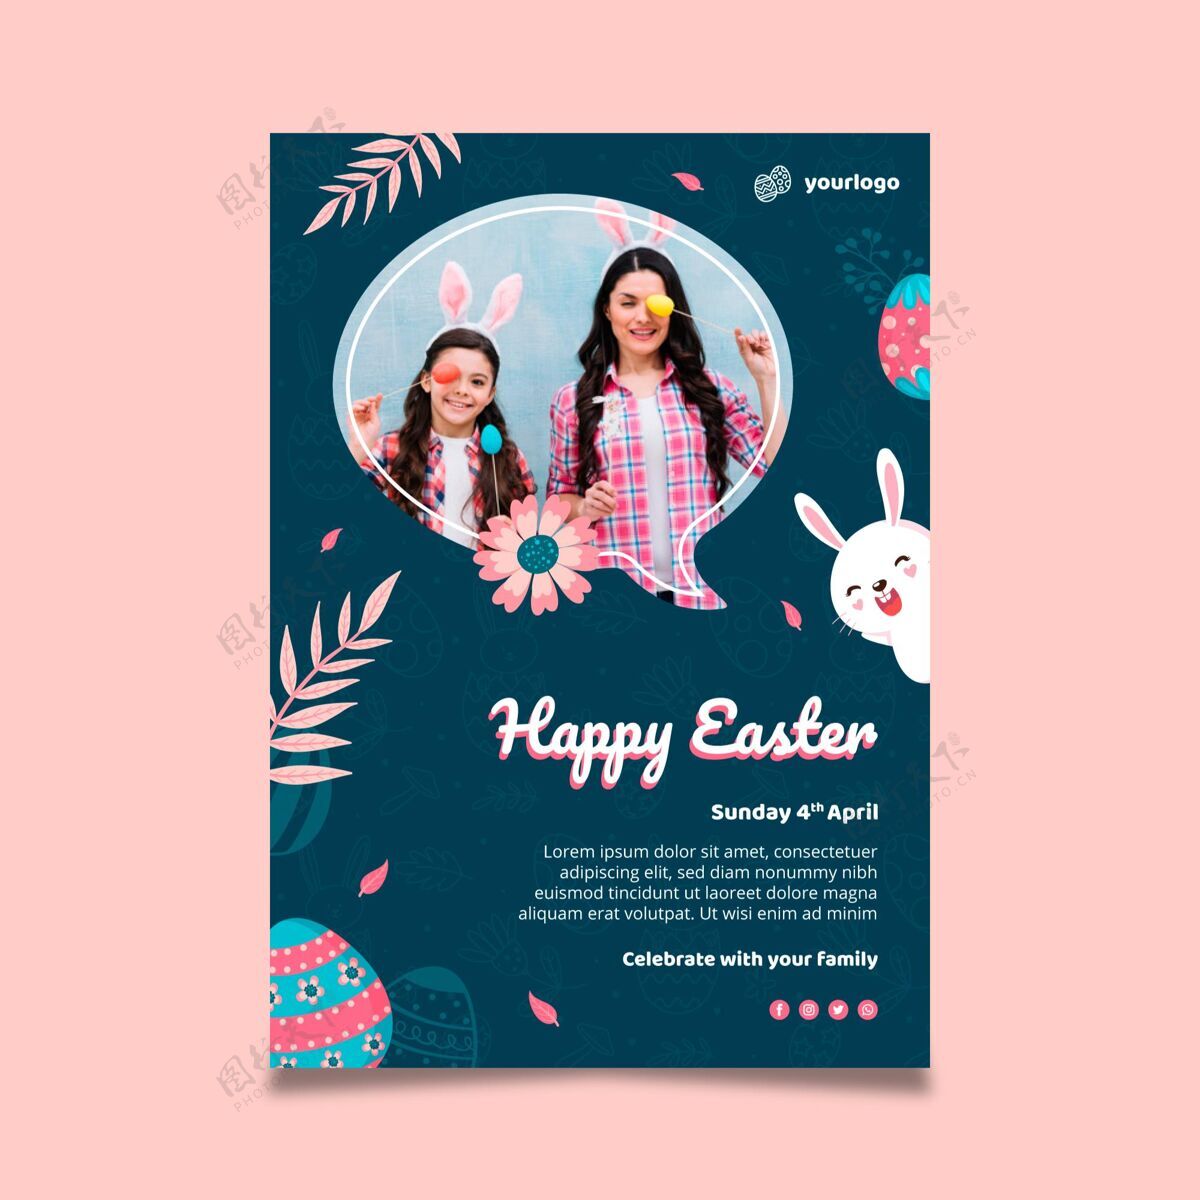 复活节垂直海报模板复活节与兔子和家人帕斯卡妈妈垂直